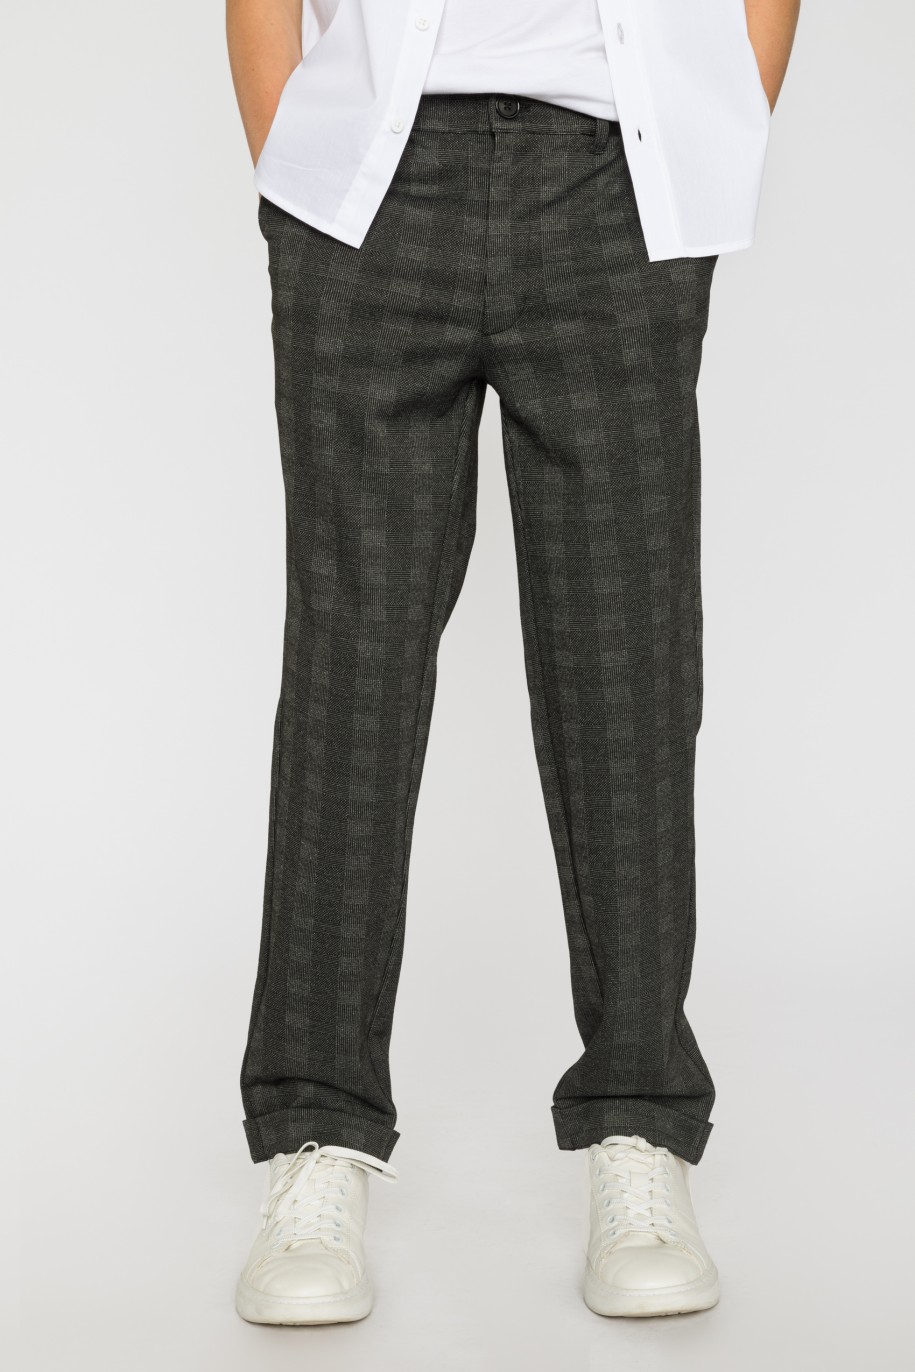 Eleganckie spodnie z dzianiny żakardowej dla chłopaka - 33598